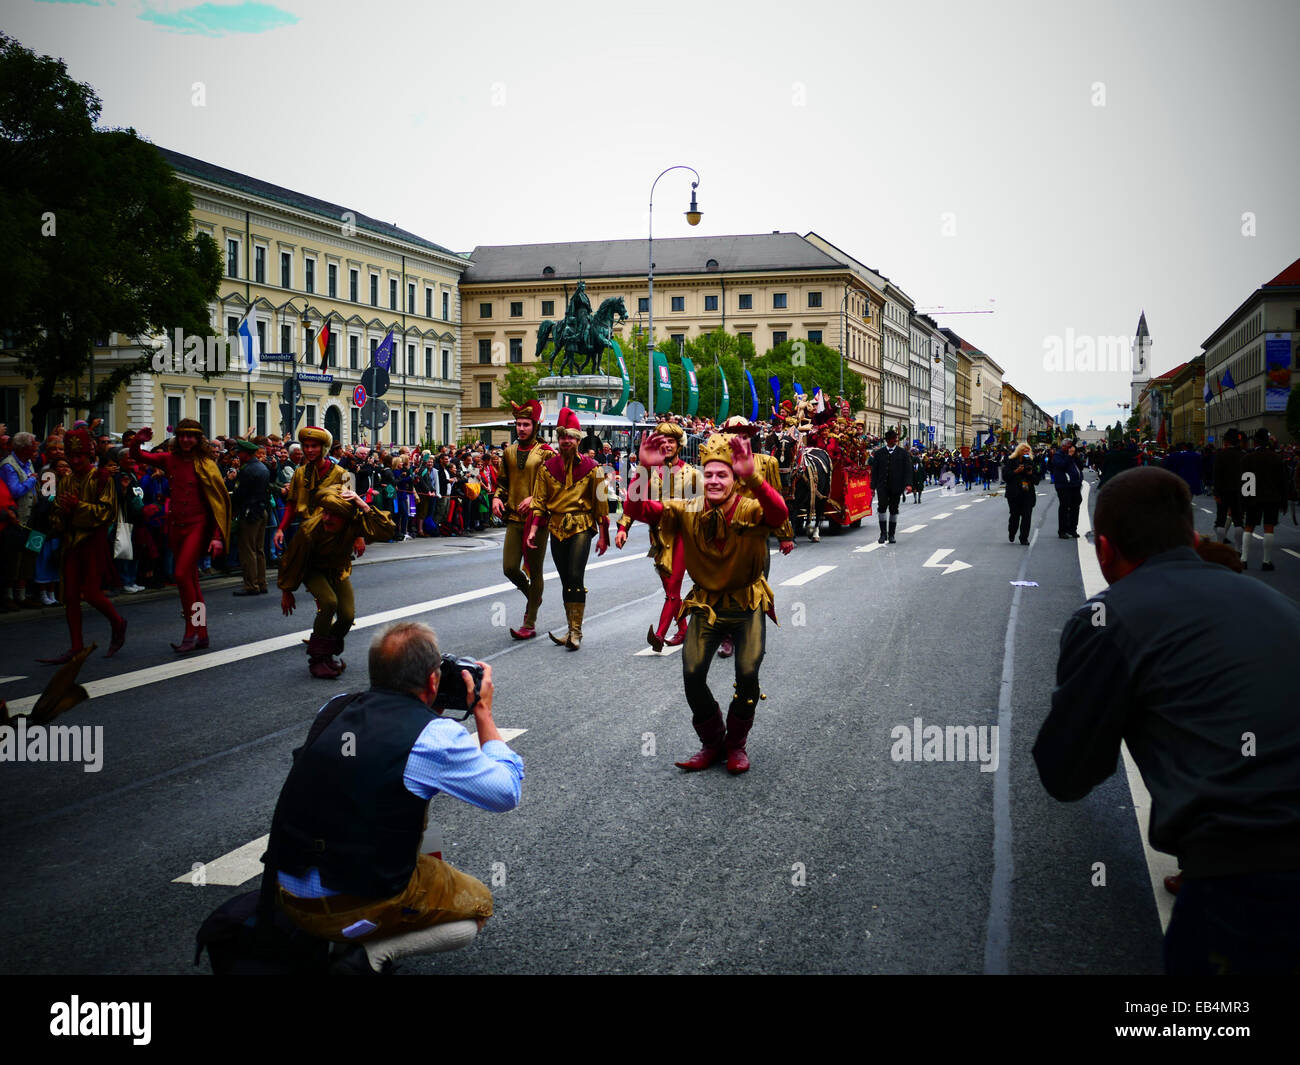 Germania Monaco di Baviera - Festa della birra Oktoberfest Oktoberfest Parade processione 2014 Fotografo fotografare il gruppo dei burattini Foto Stock